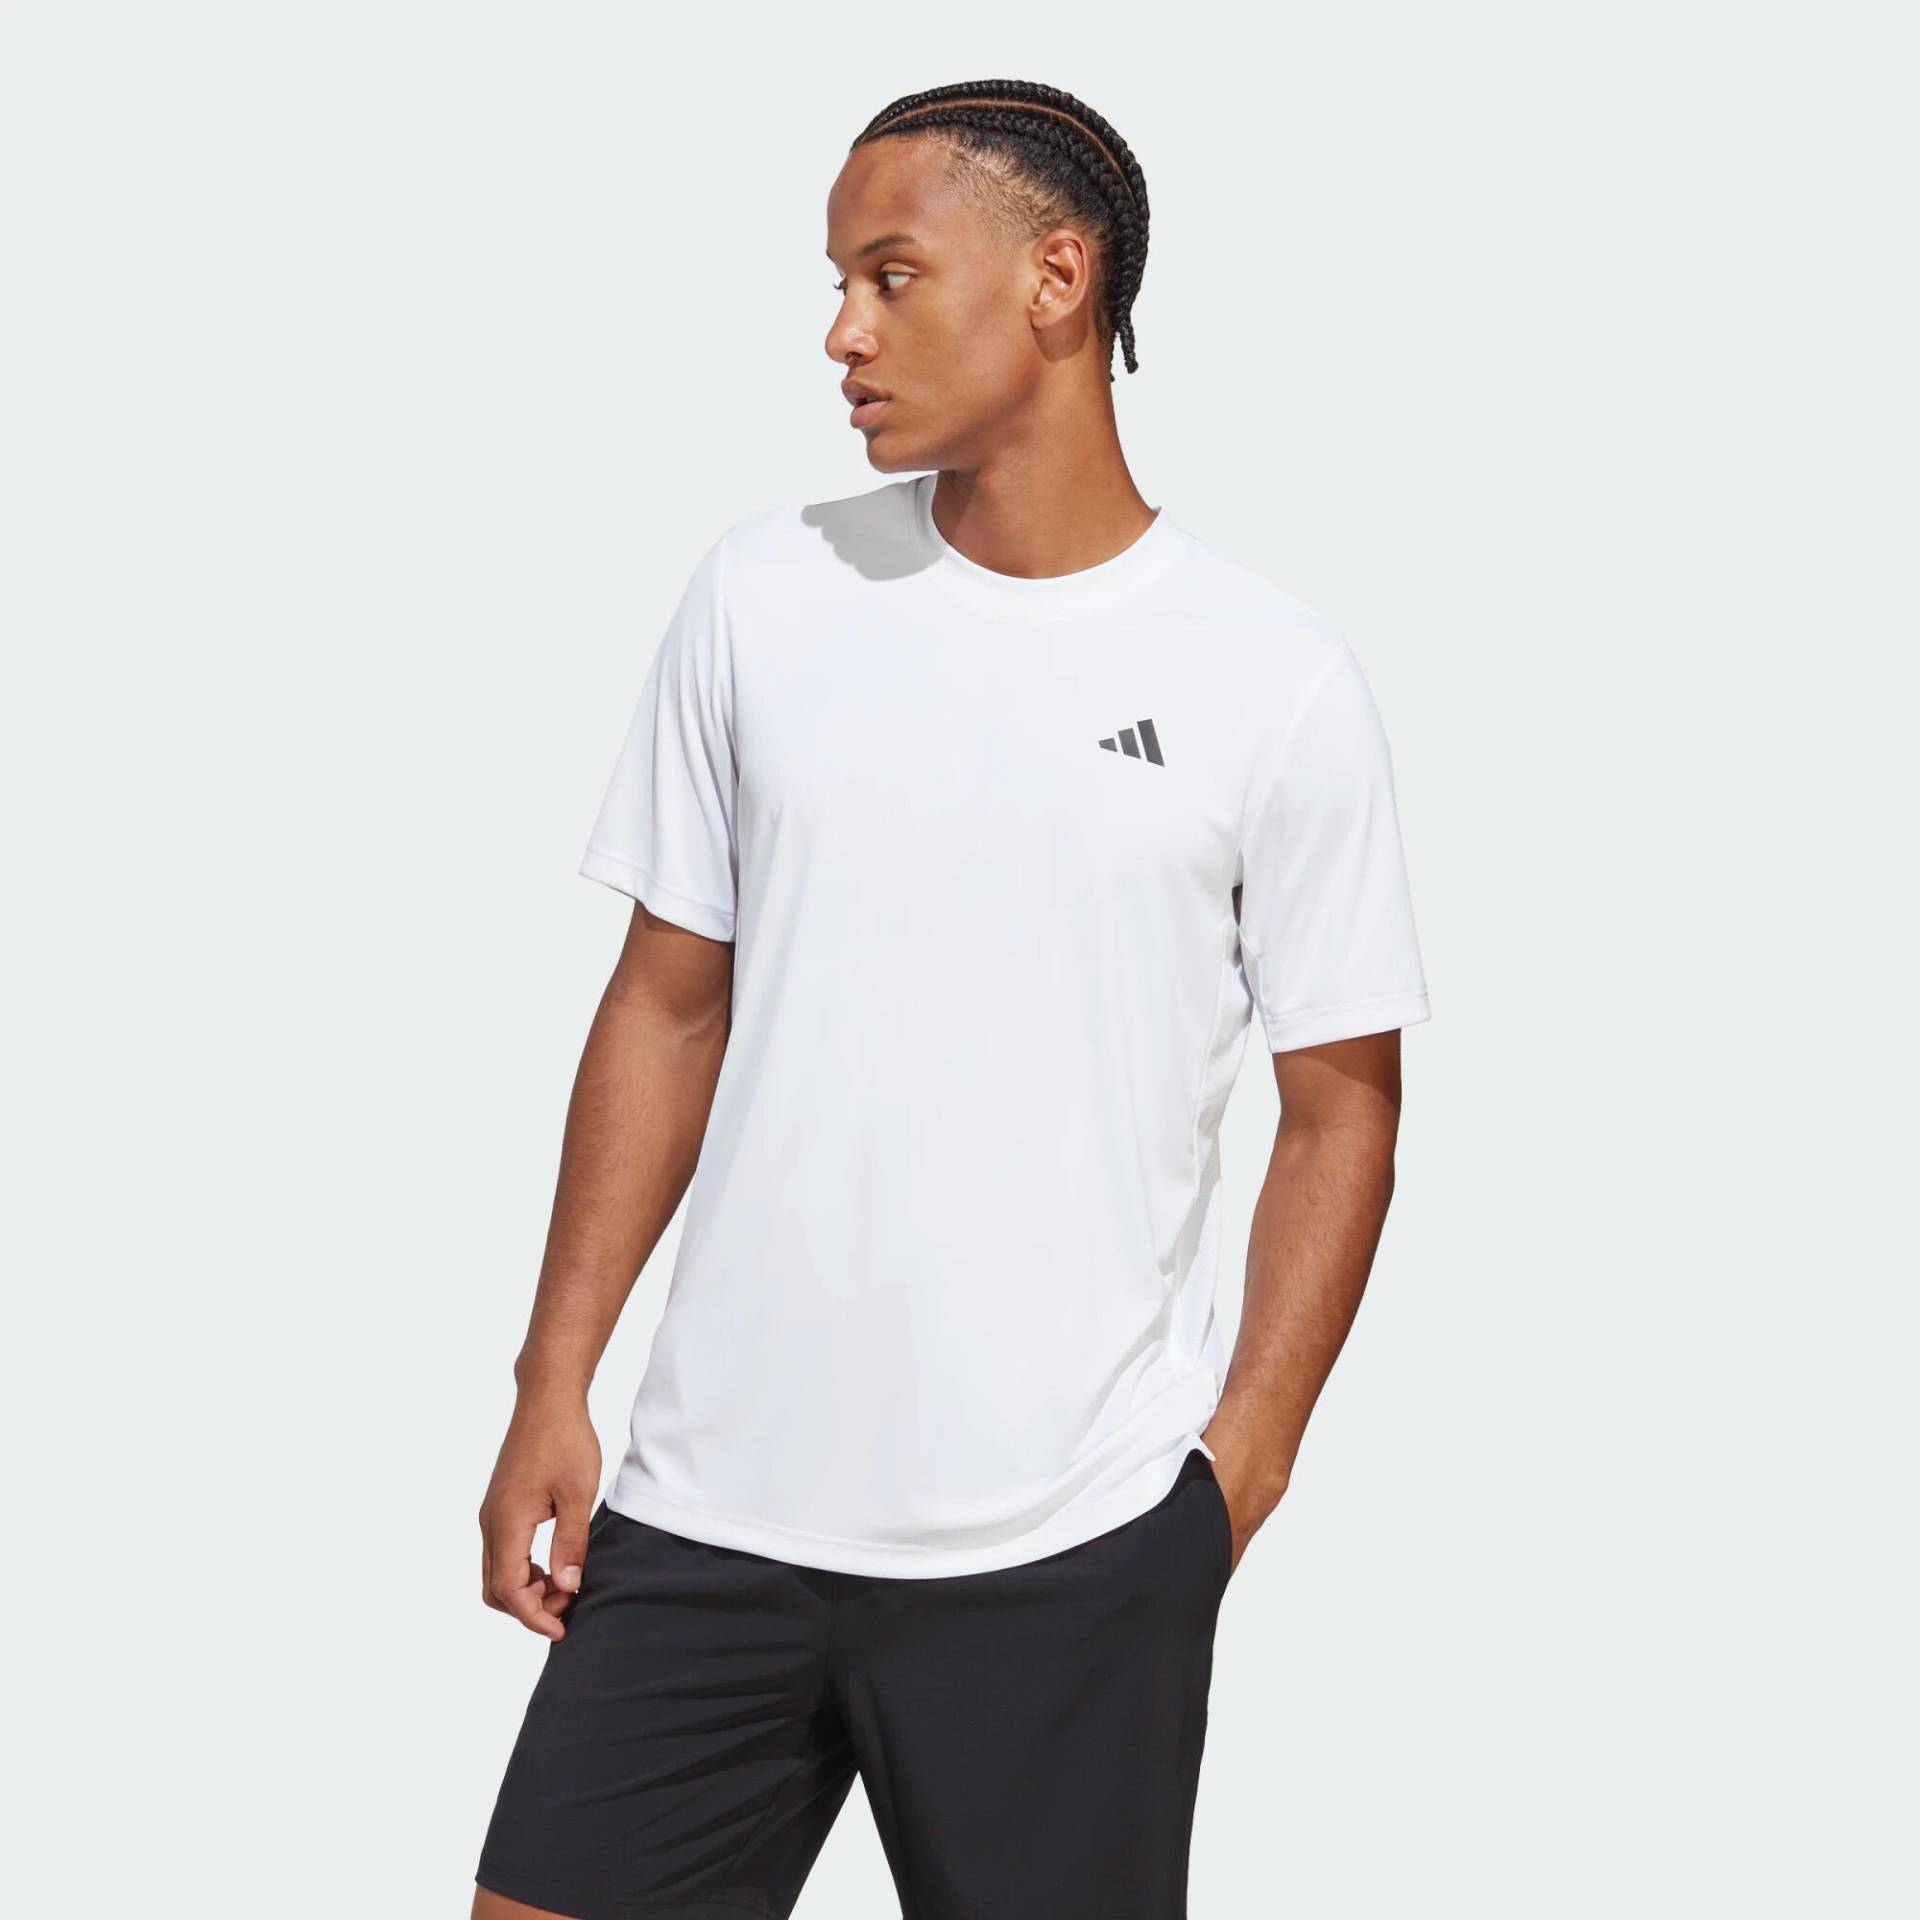 Adidas T-Shirt Herren Tennis Club Shirt - weiß von Adidas